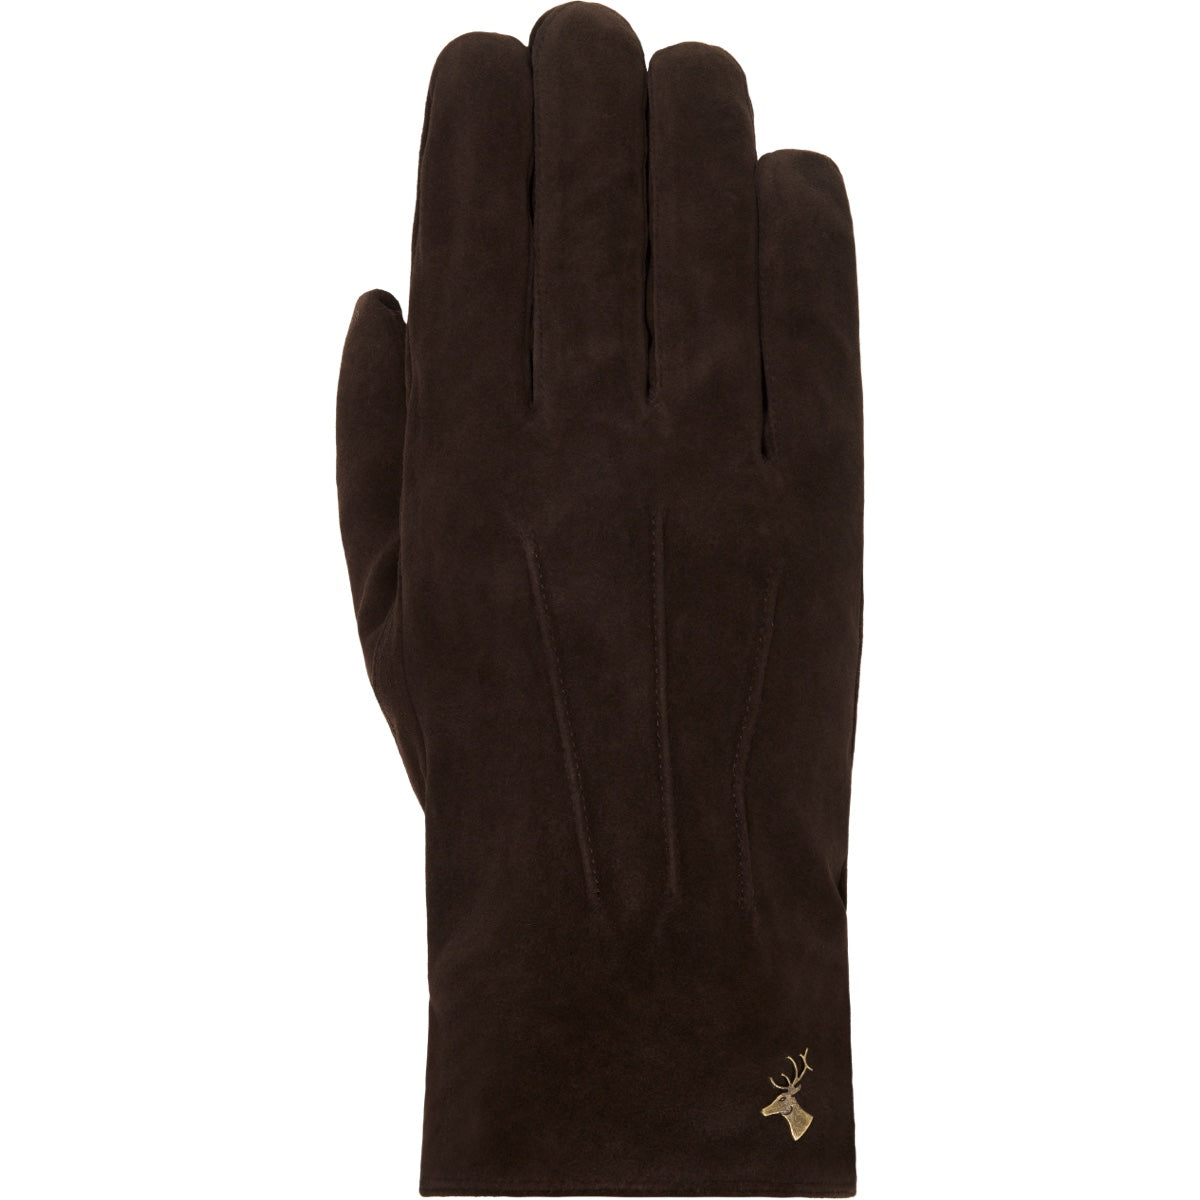 Suede Leather Gloves Brown Men Rex - Schwartz & von Halen® - Premium Leather Gloves - 1